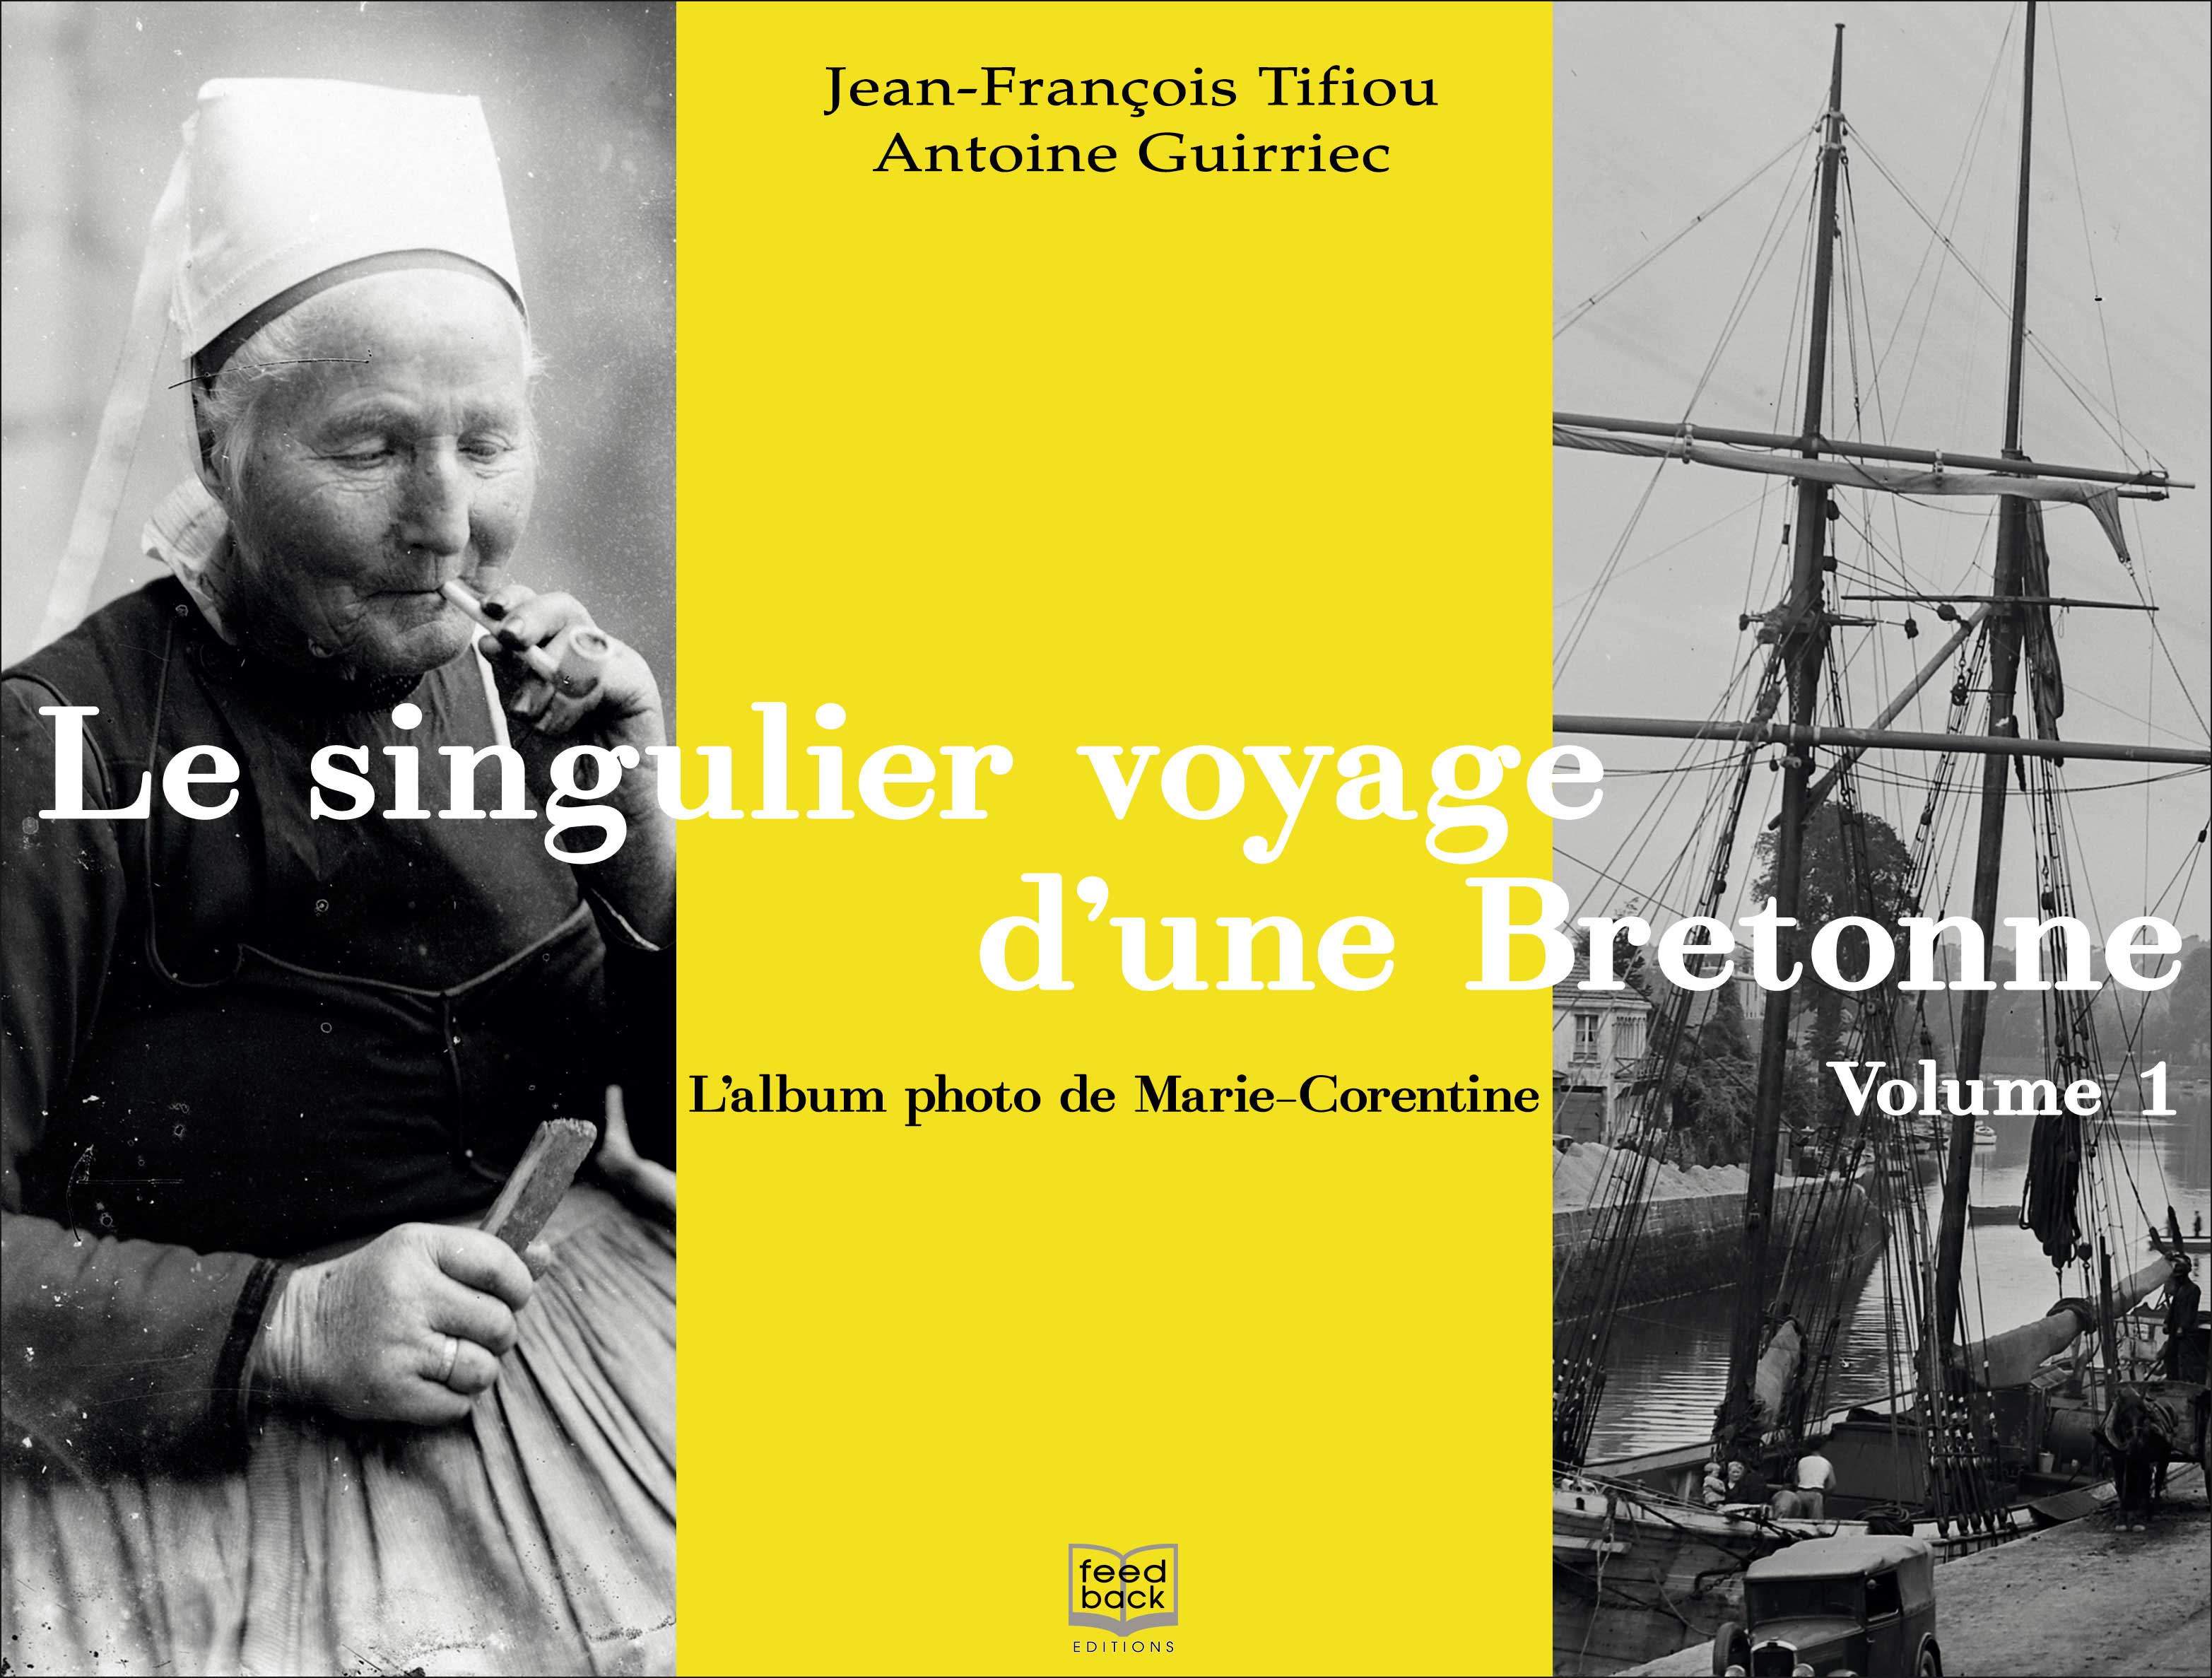 Le singulier voyage d'une Bretonne Volume 1 - Jean-François Tifiou et Antoine Guirriec